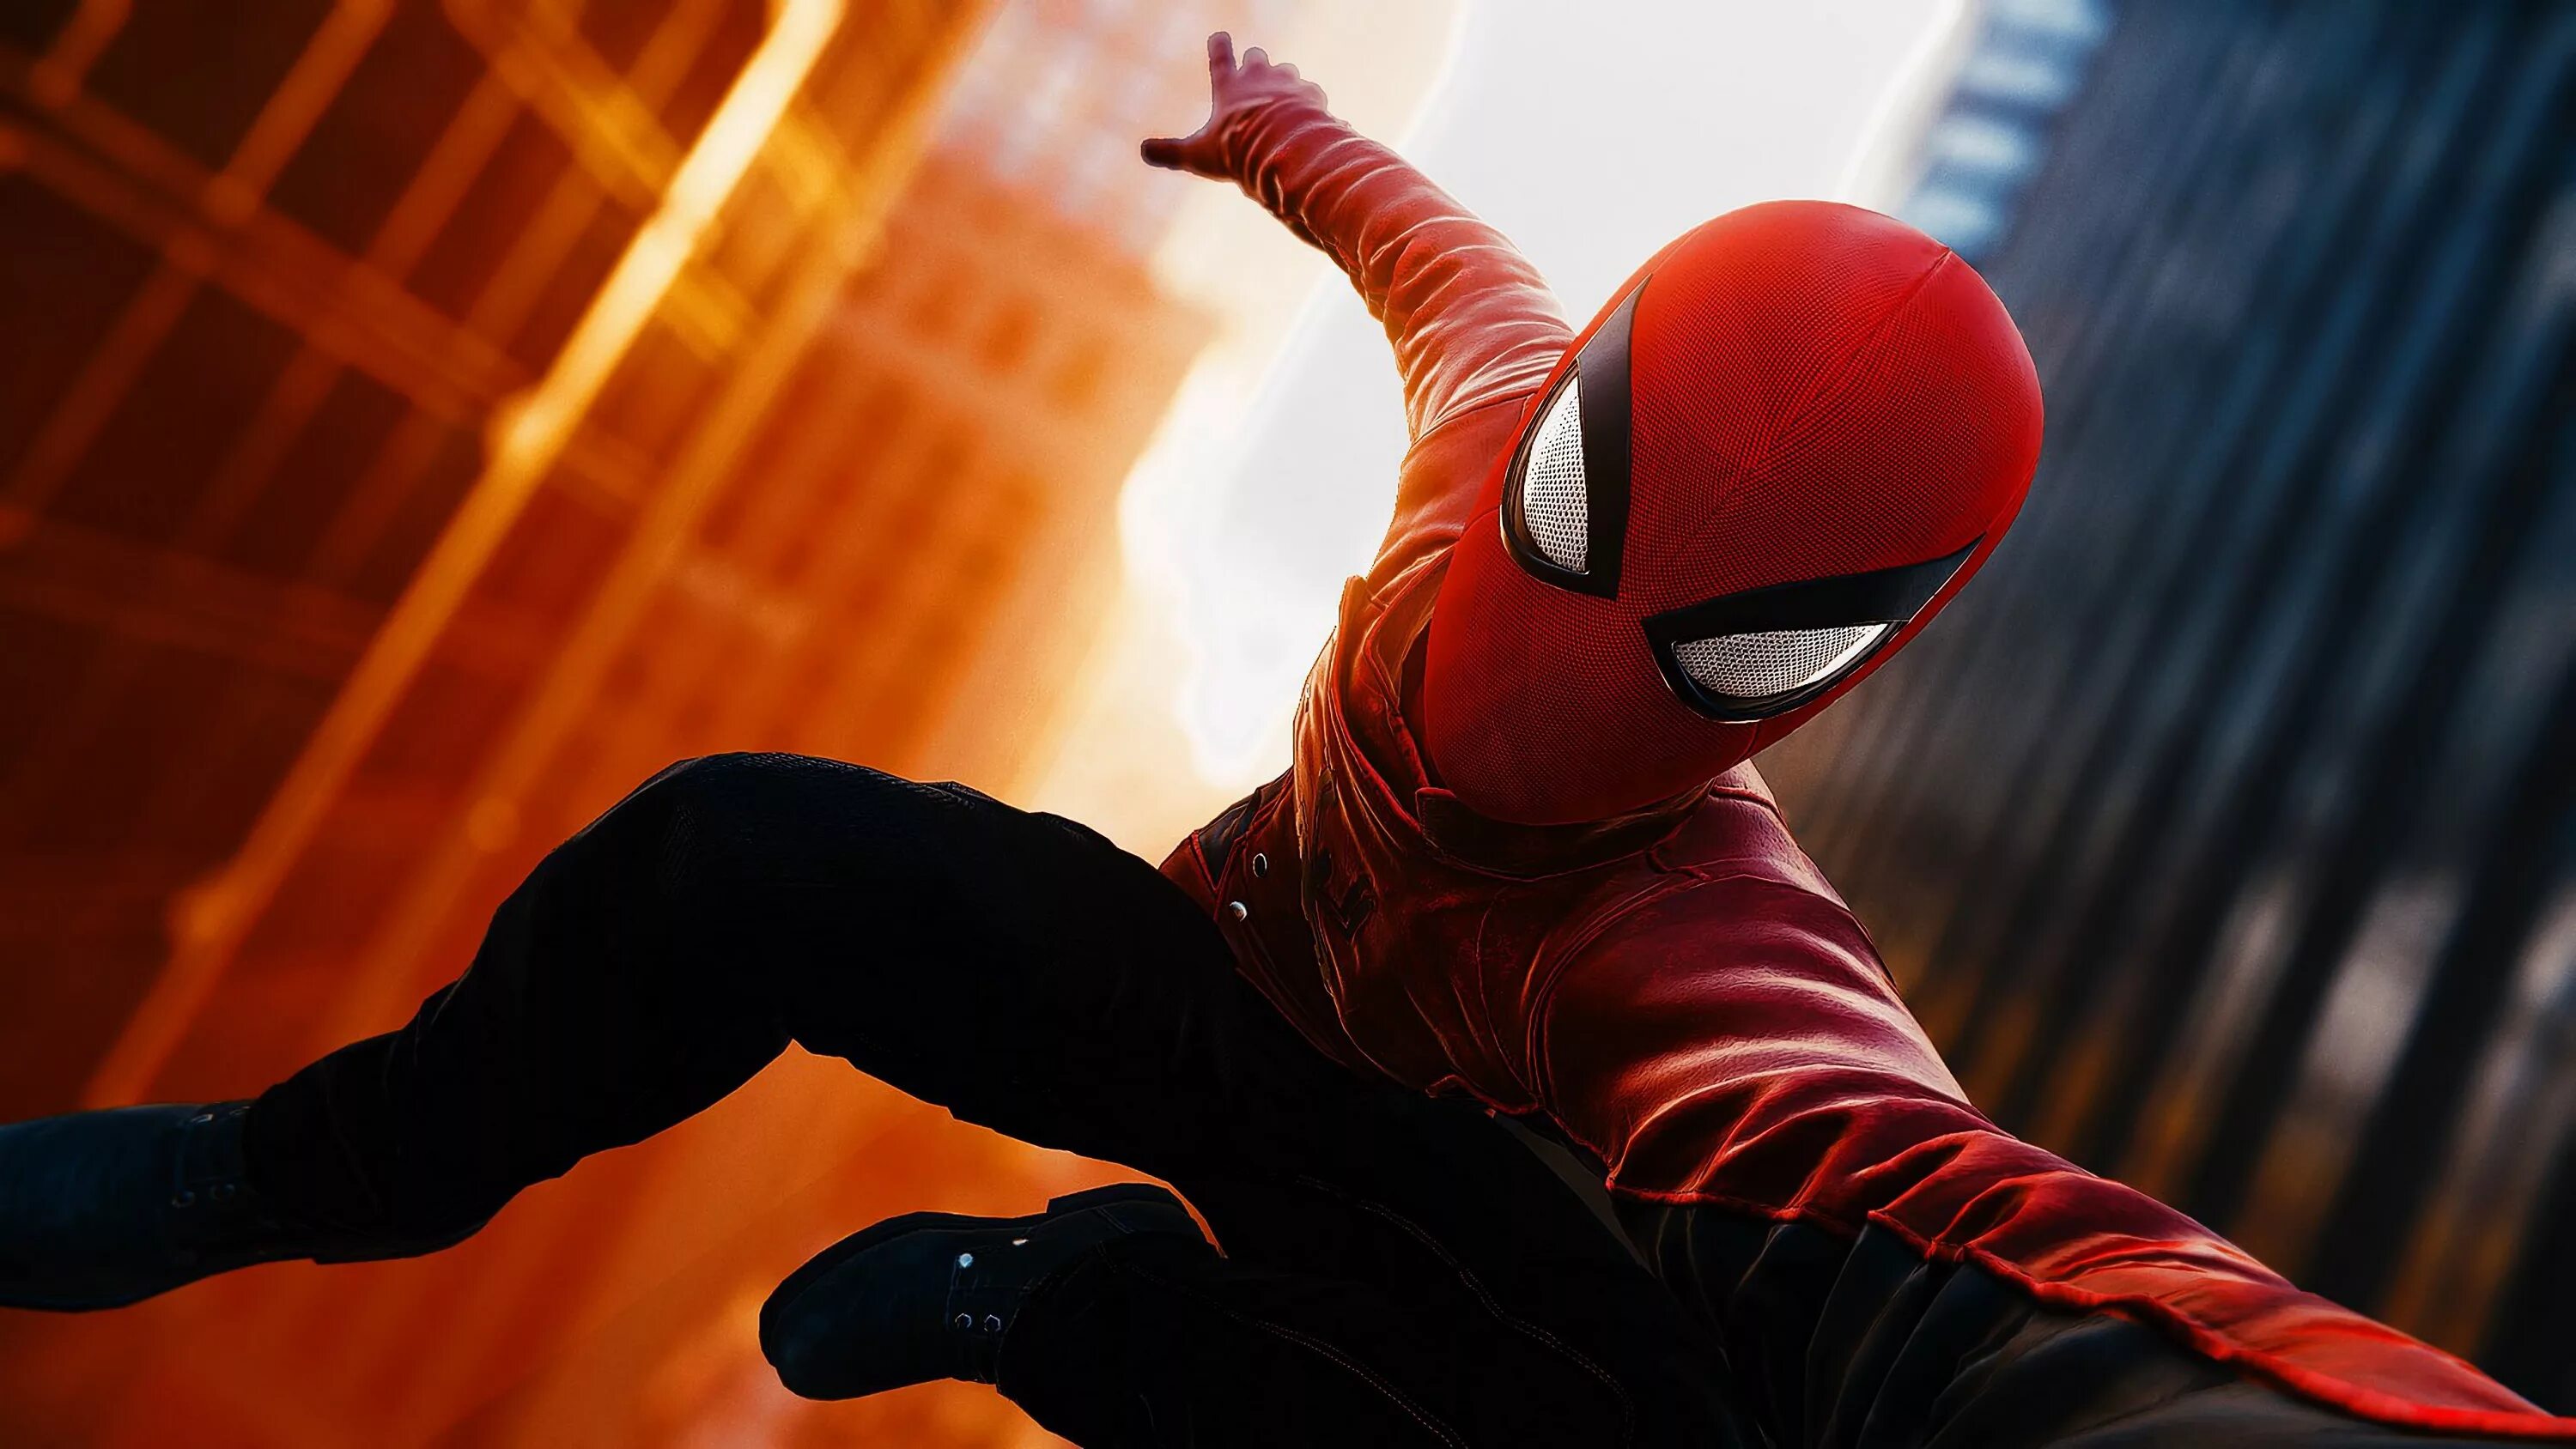 Spider man 4. Спайдер Мэн. Spider man ps4. Spider-man (игра, 2018). Spider man ps4 человек паук.